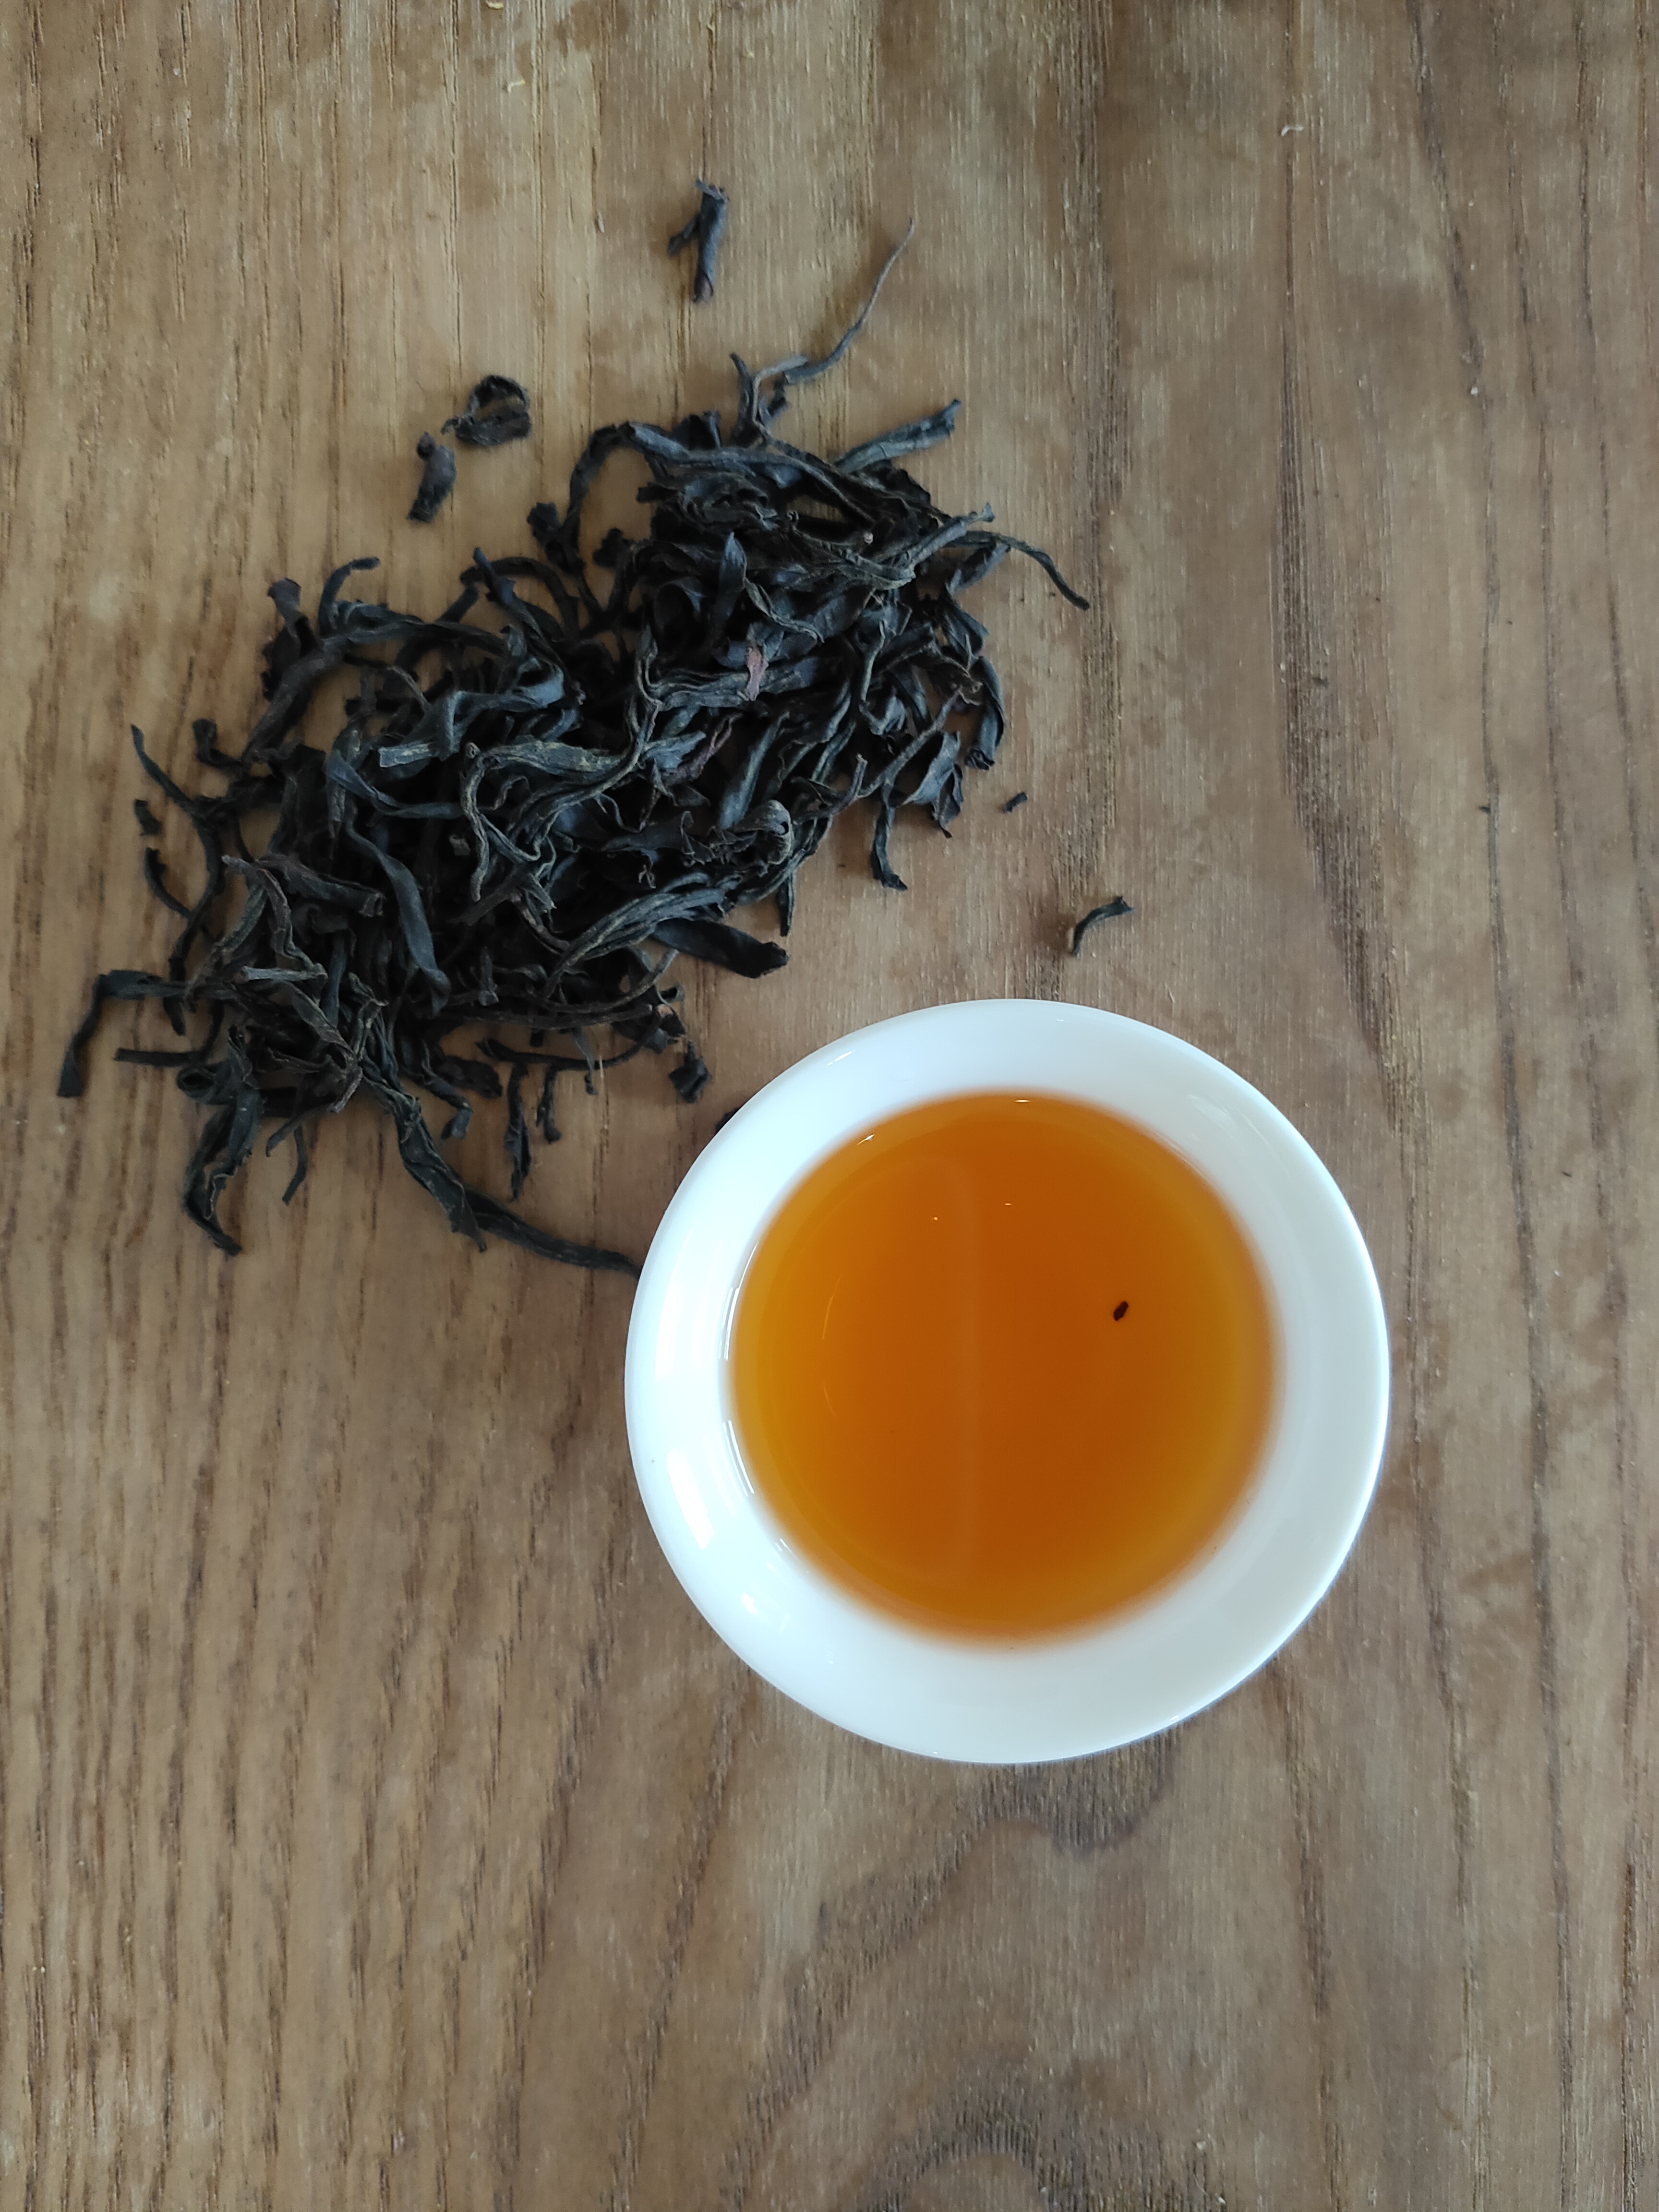 鳳凰単叢の紅茶が美味しいです。